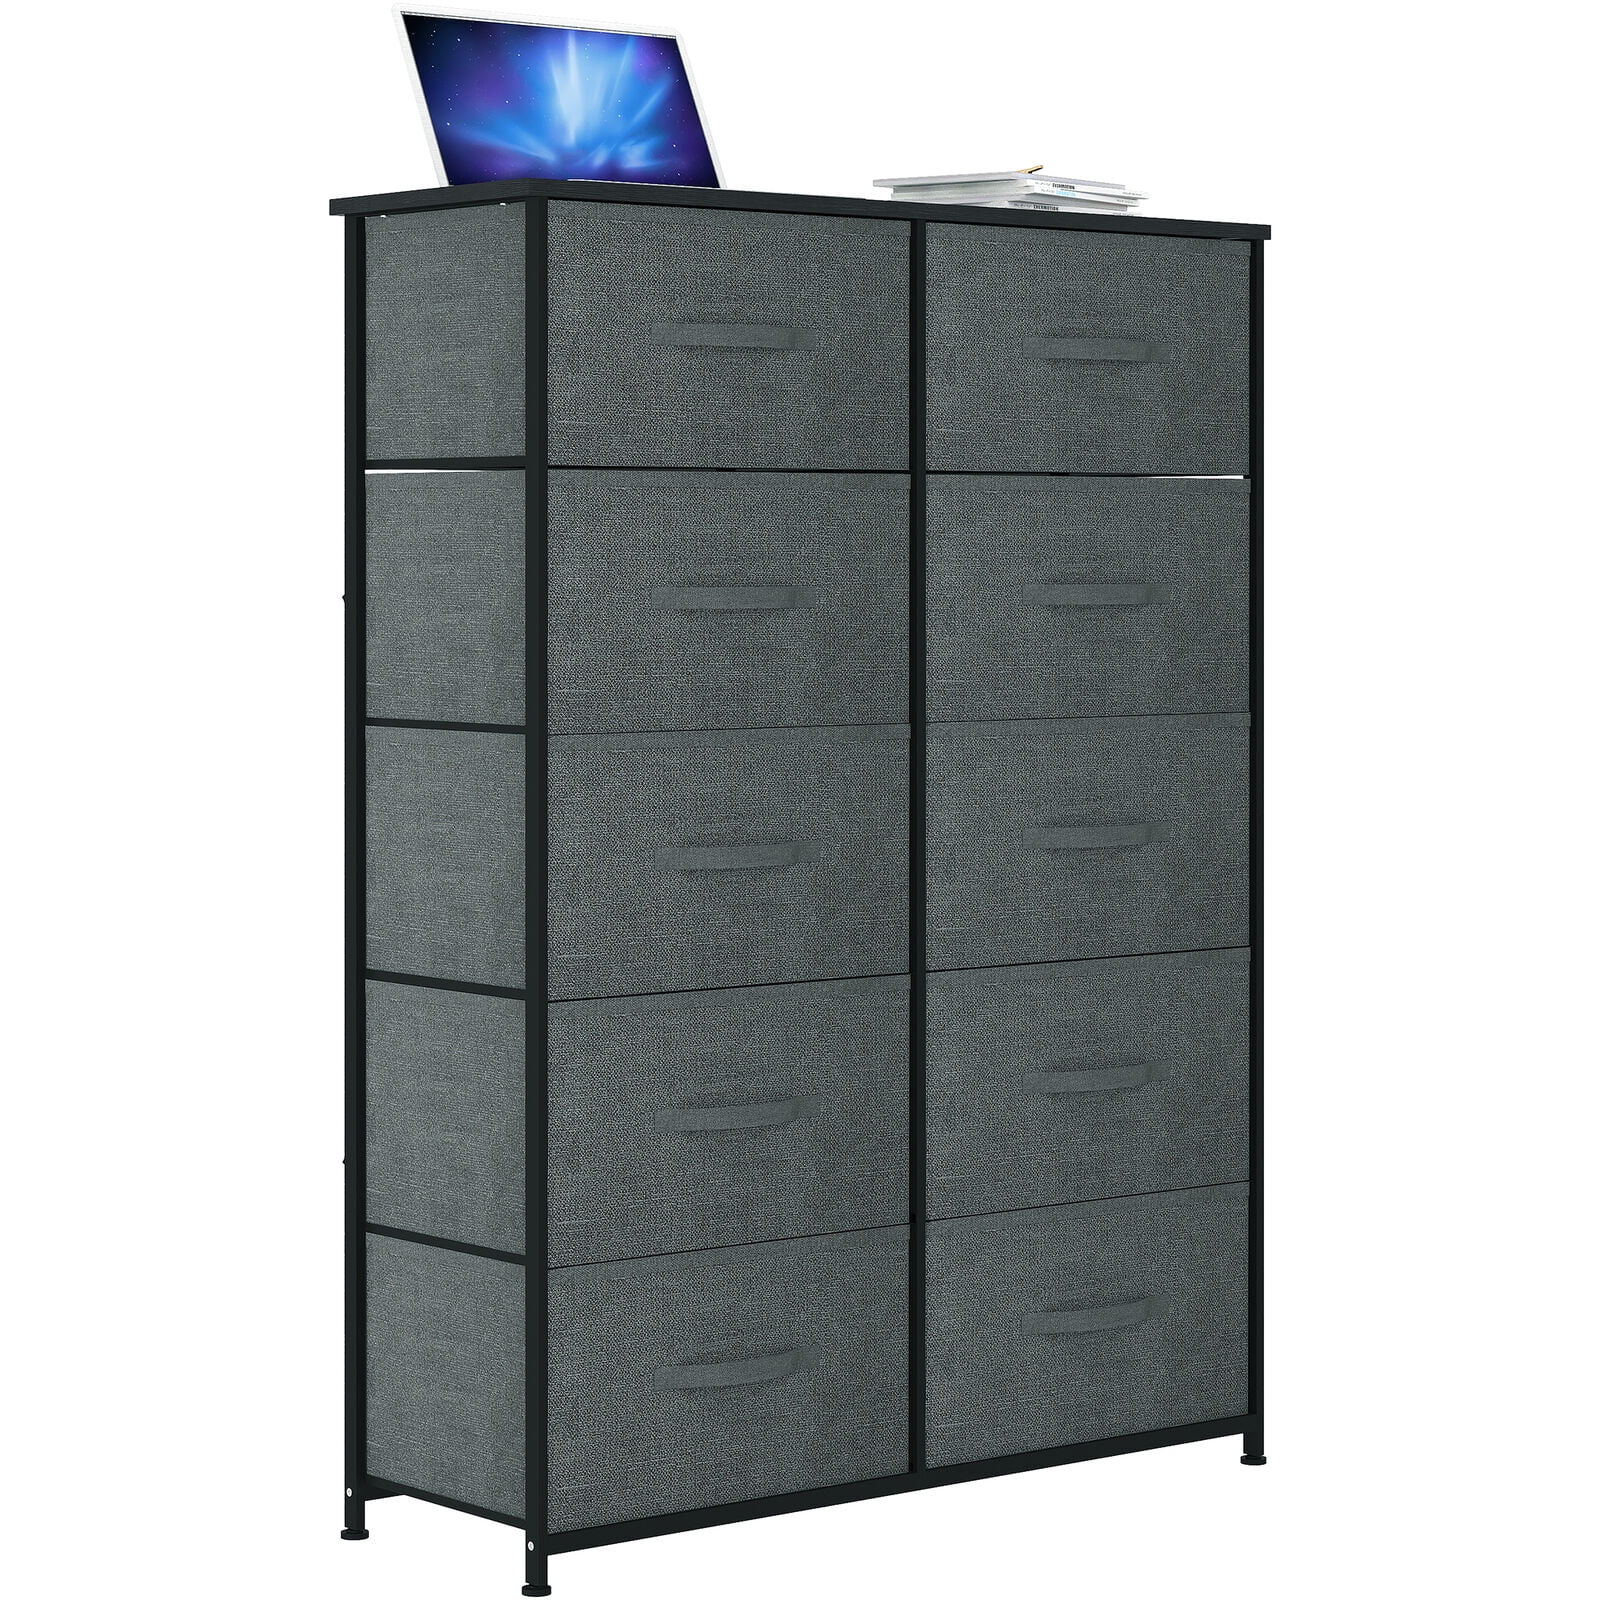 Dextrus 8 Drawer Storage Dresser Furniture Fabric Storage Tower Cabinet Bin Storage  Organizer for Living Room Kids Room, Black Gray 